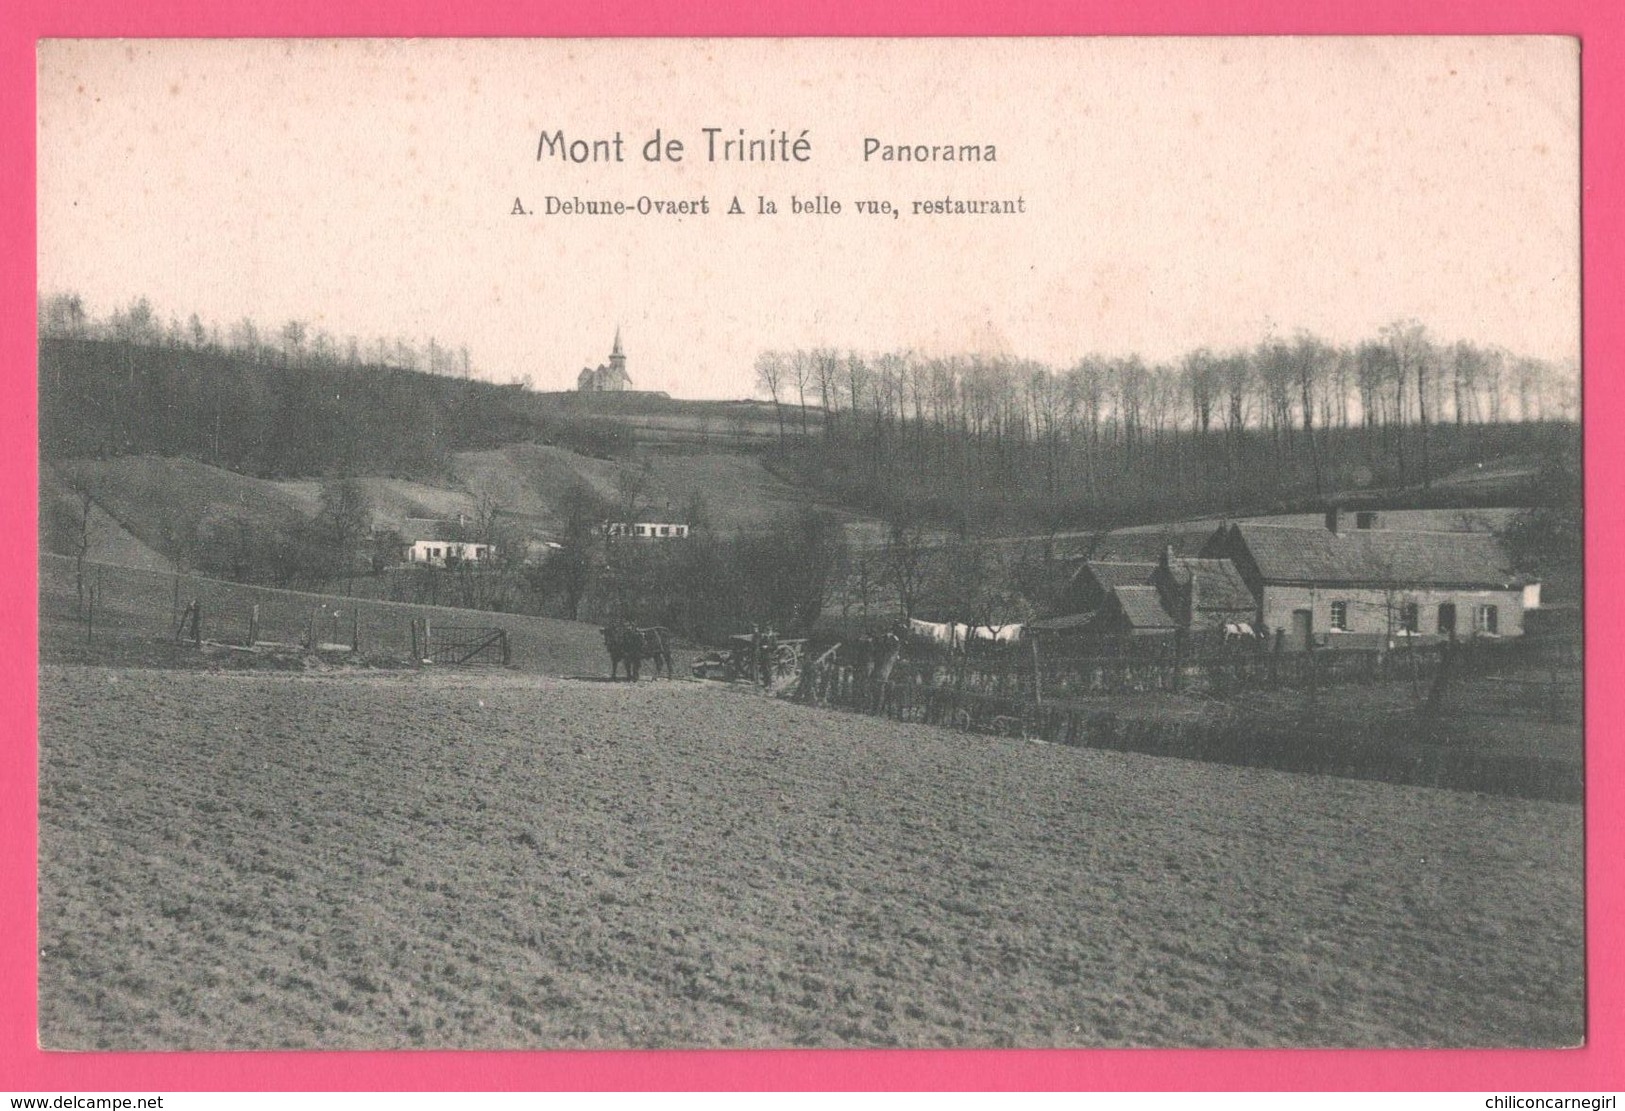 Mont De La Trinité - Panorama - Restaurant " A La Belle Vue " A. DEBUNE OVAERT - Edit. WILHELM HOFFMANN - Doornik